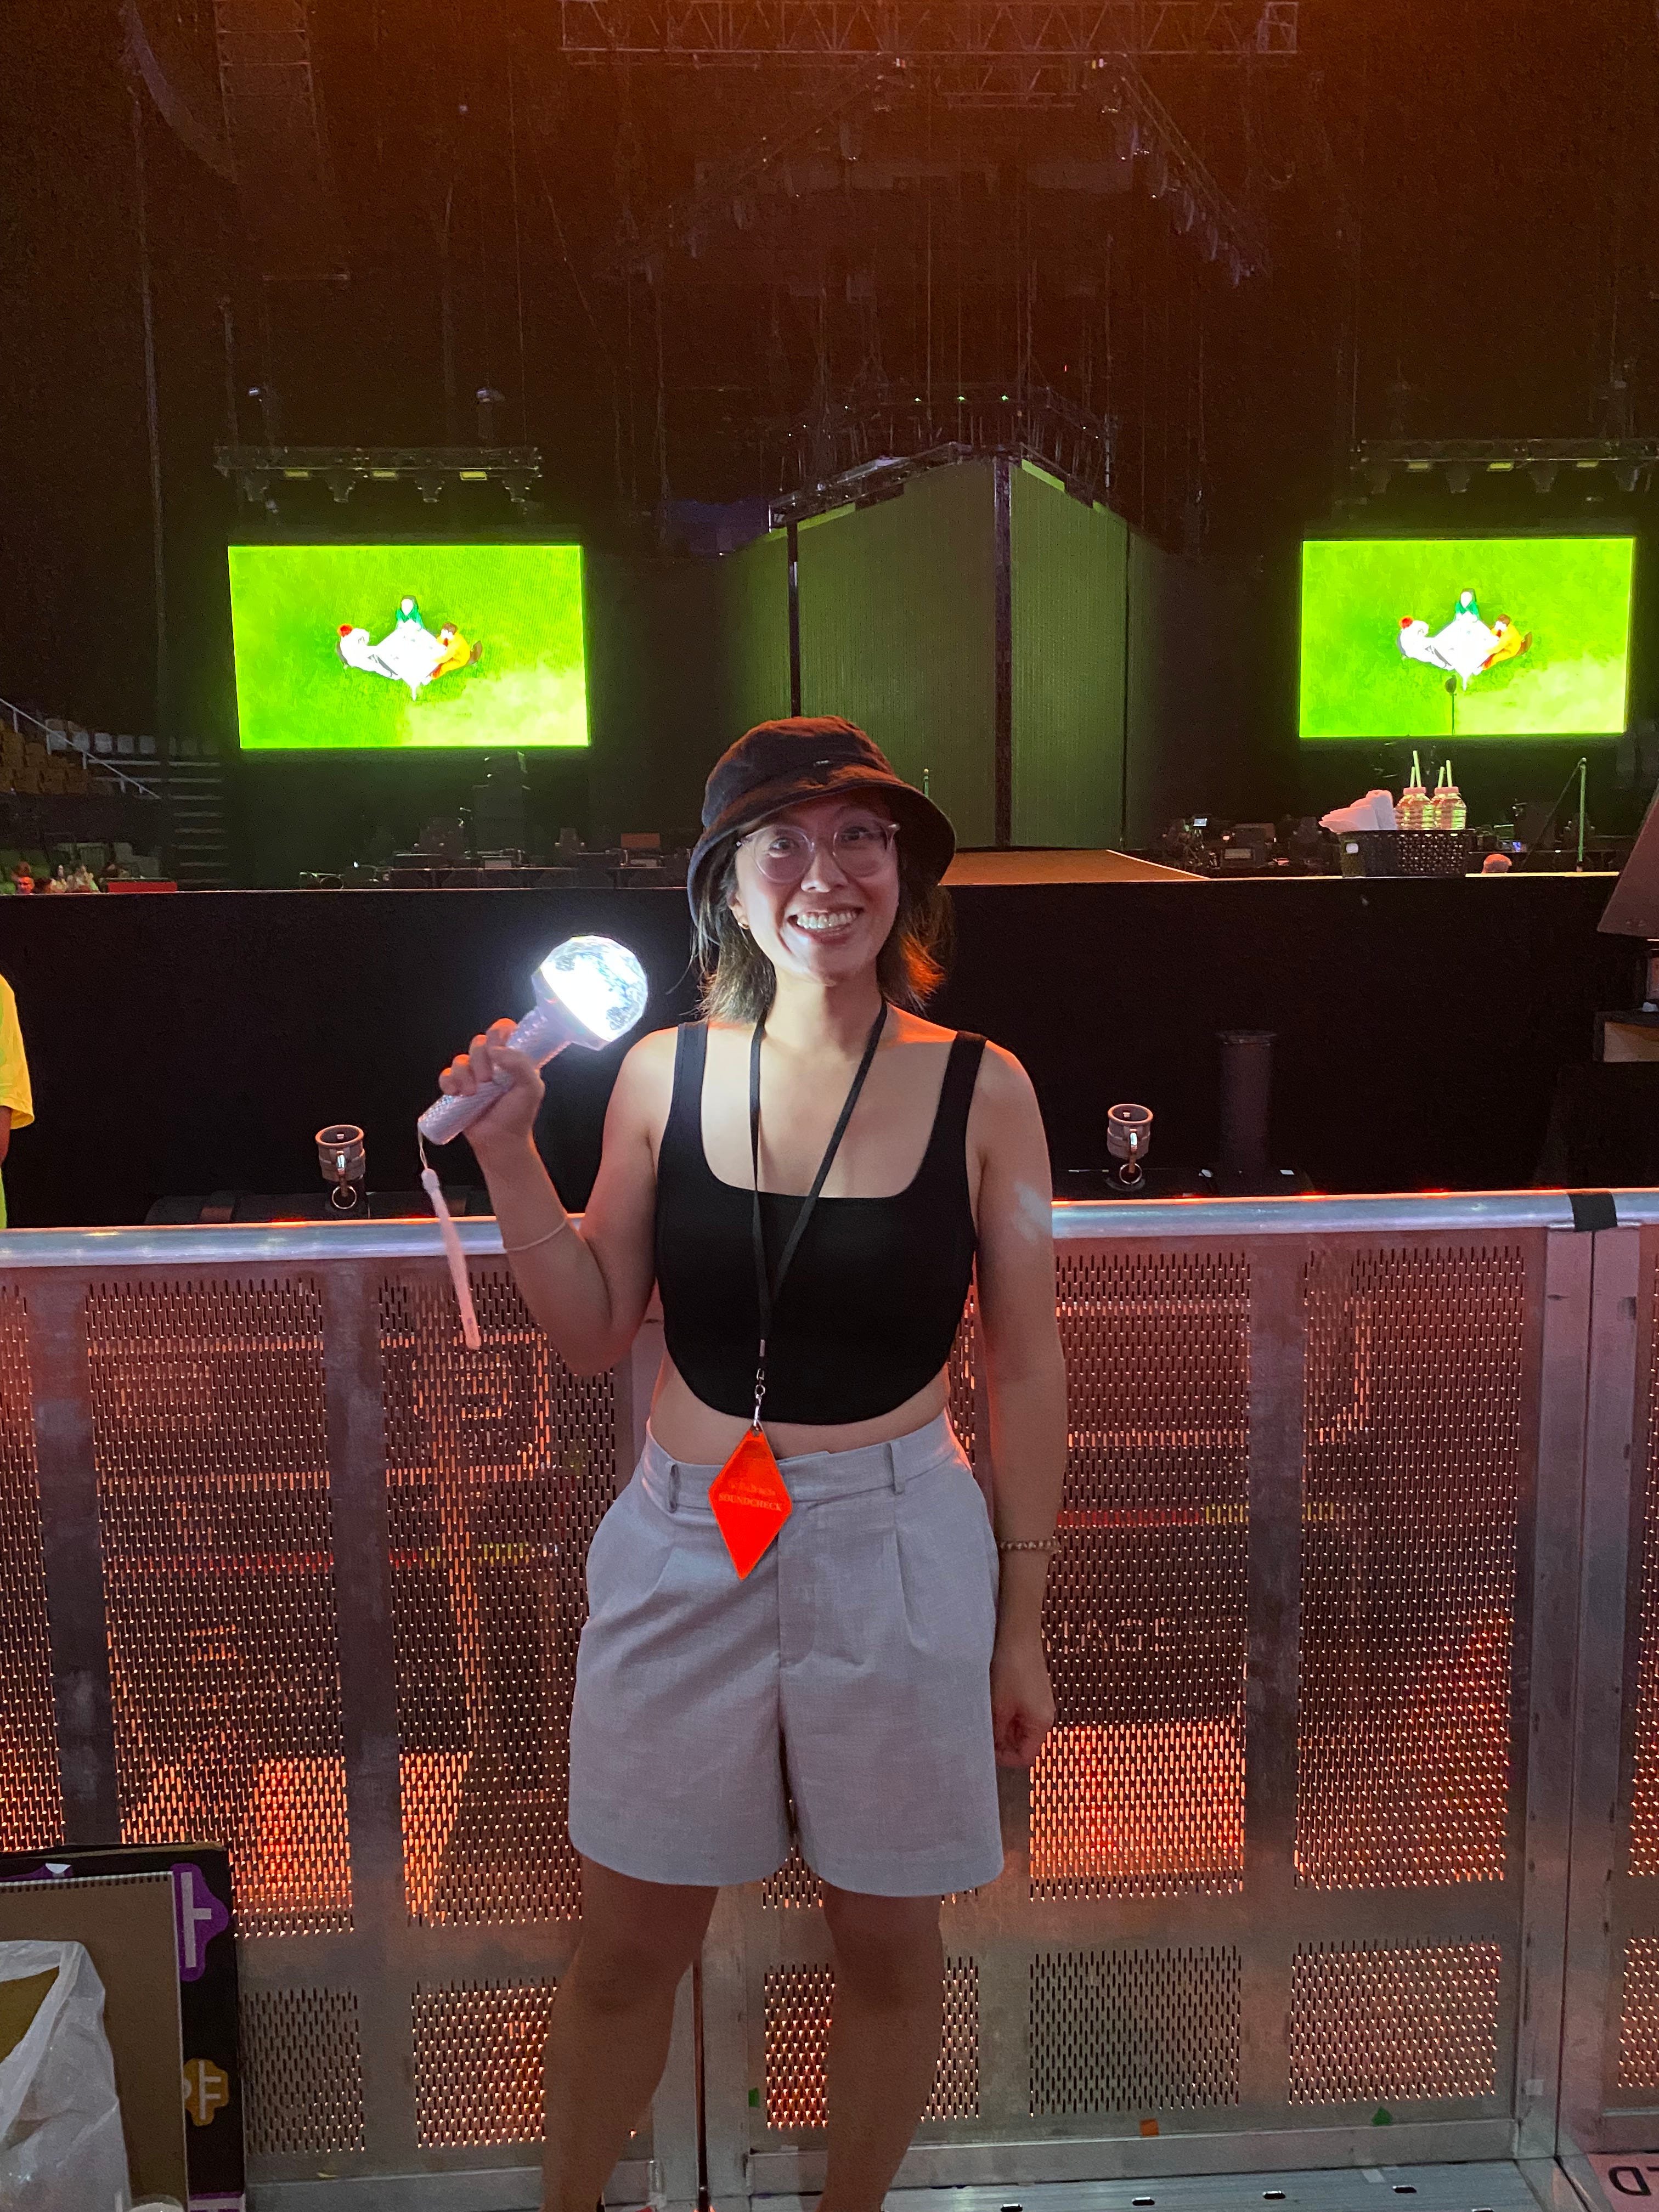 Do you need a lightstick to enjoy a K-pop concert?